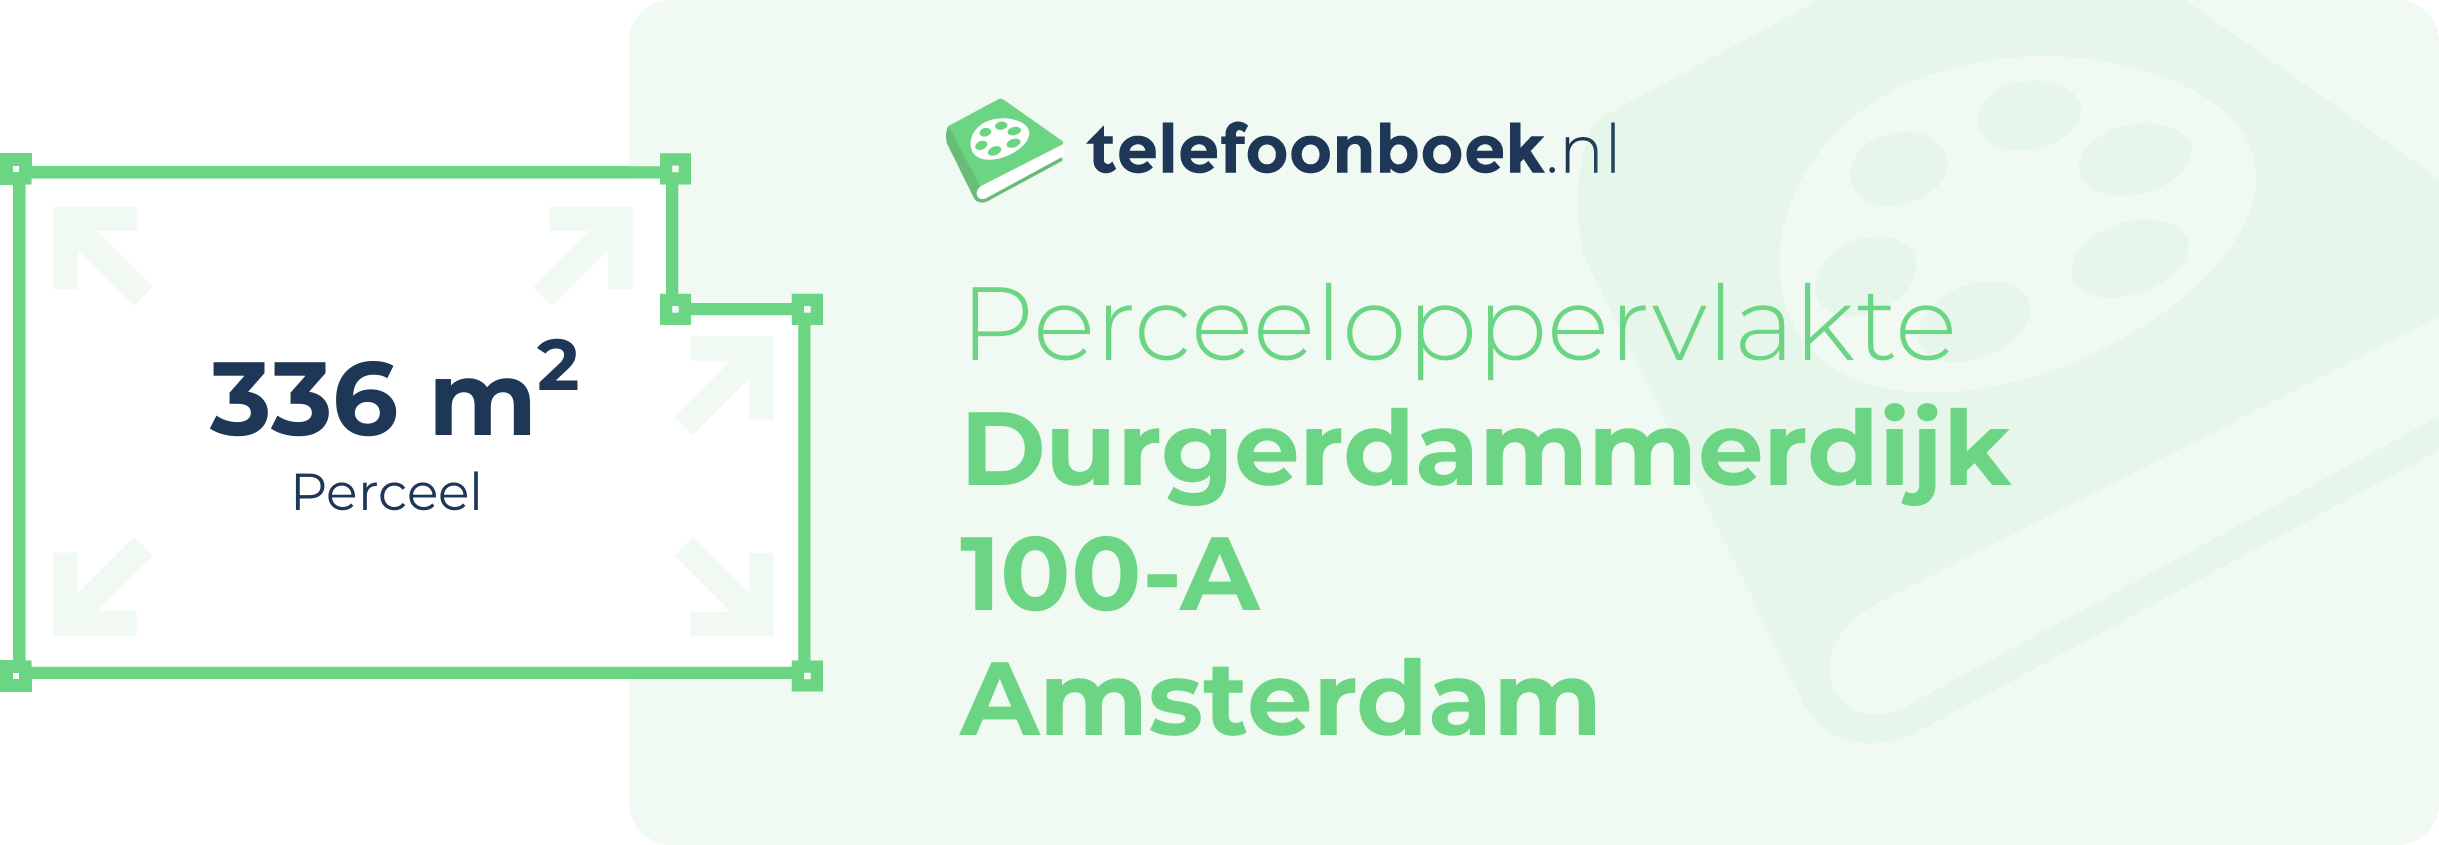 Perceeloppervlakte Durgerdammerdijk 100-A Amsterdam